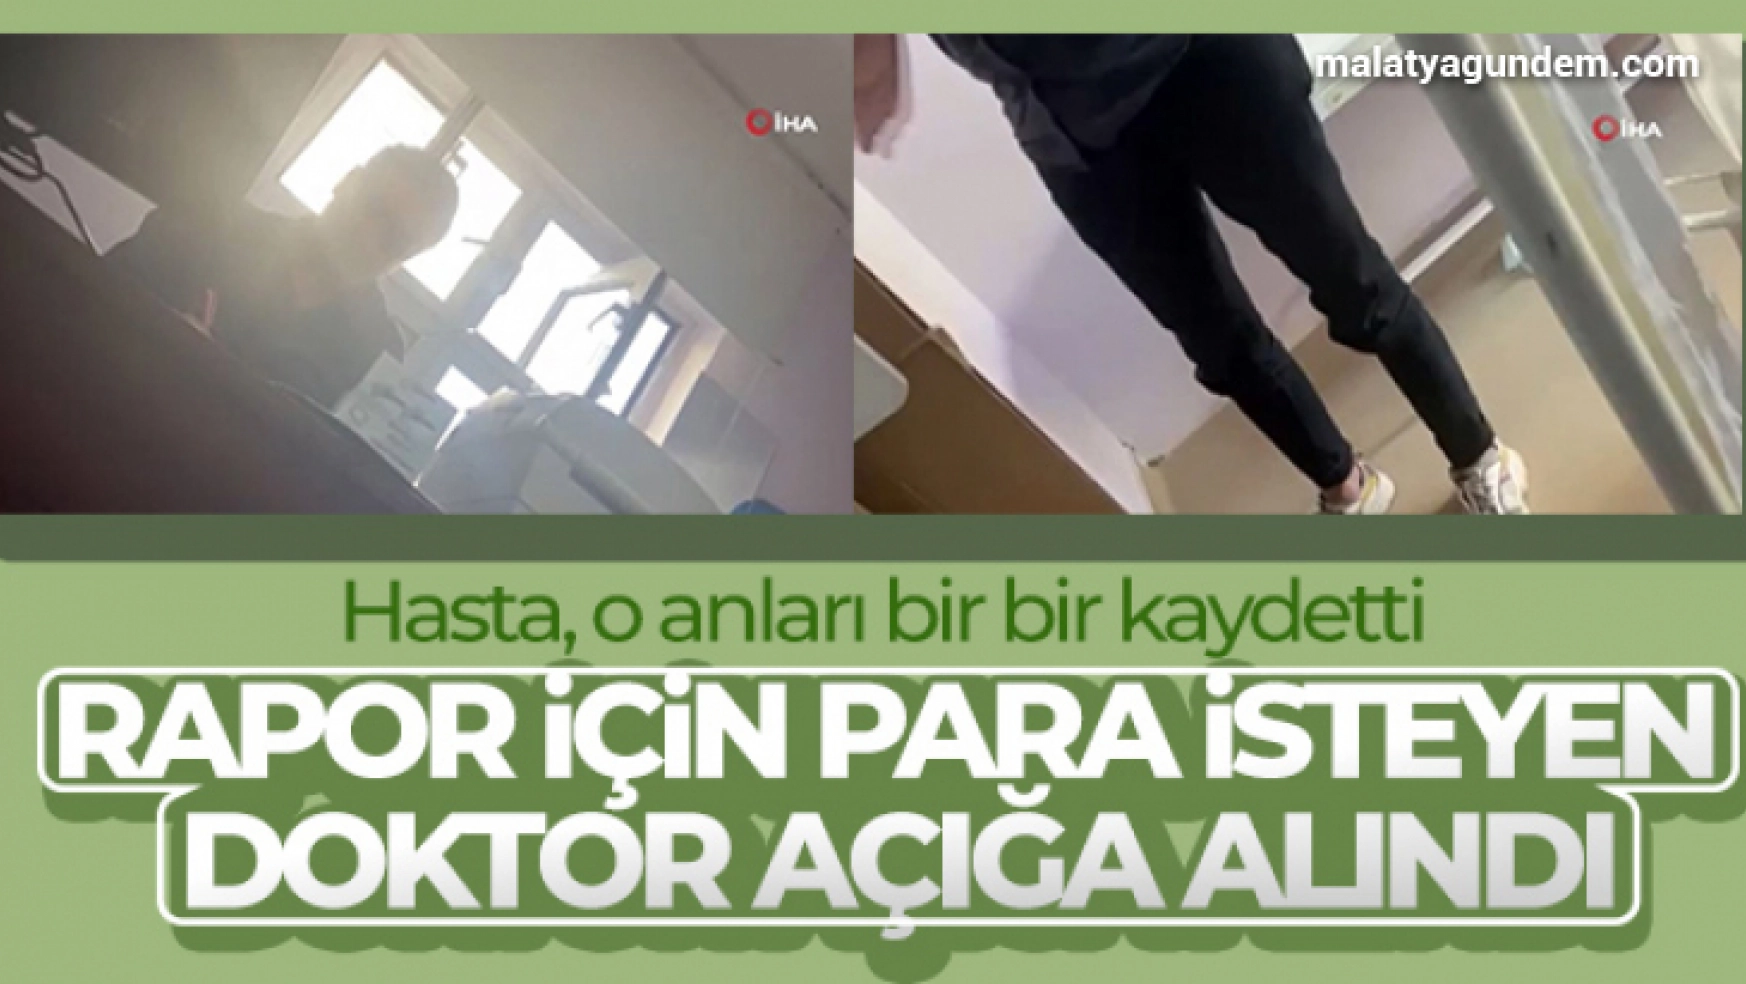 İzmir'de istirahat raporu için para istediği ileri sürülen doktor açığa alındı